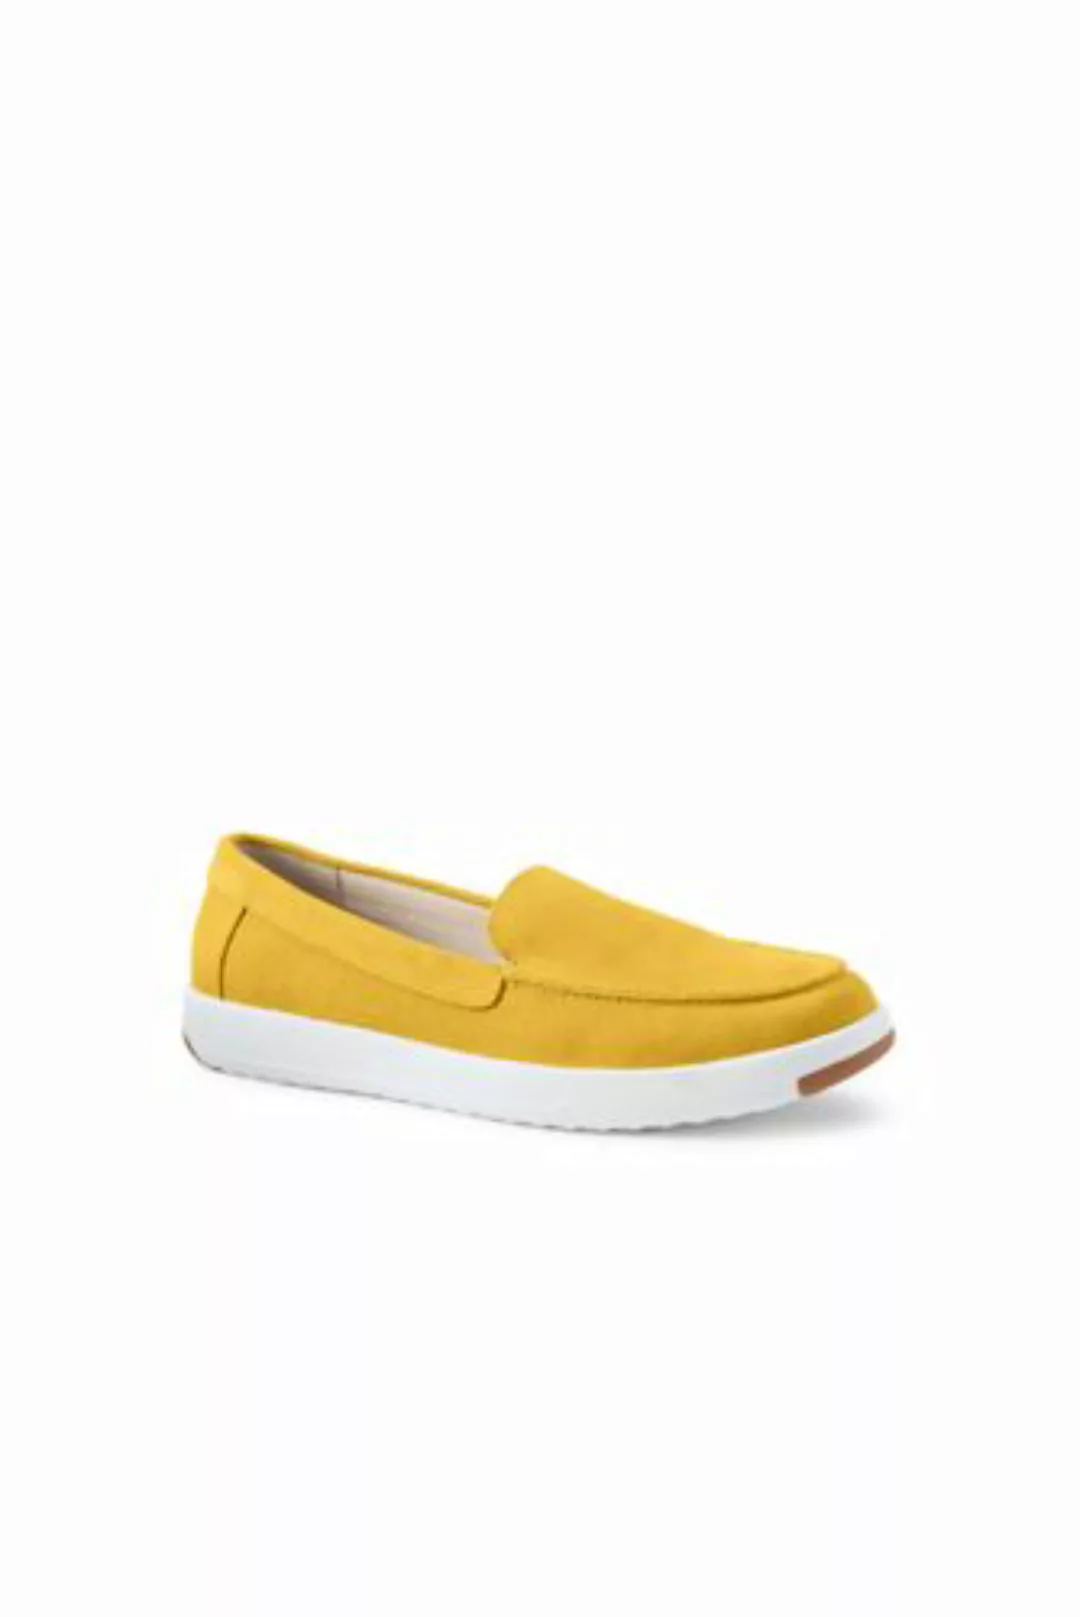 Federleichte Komfort-Loafer, Damen, Größe: 41.5 Weit, Gelb, Rauleder, by La günstig online kaufen